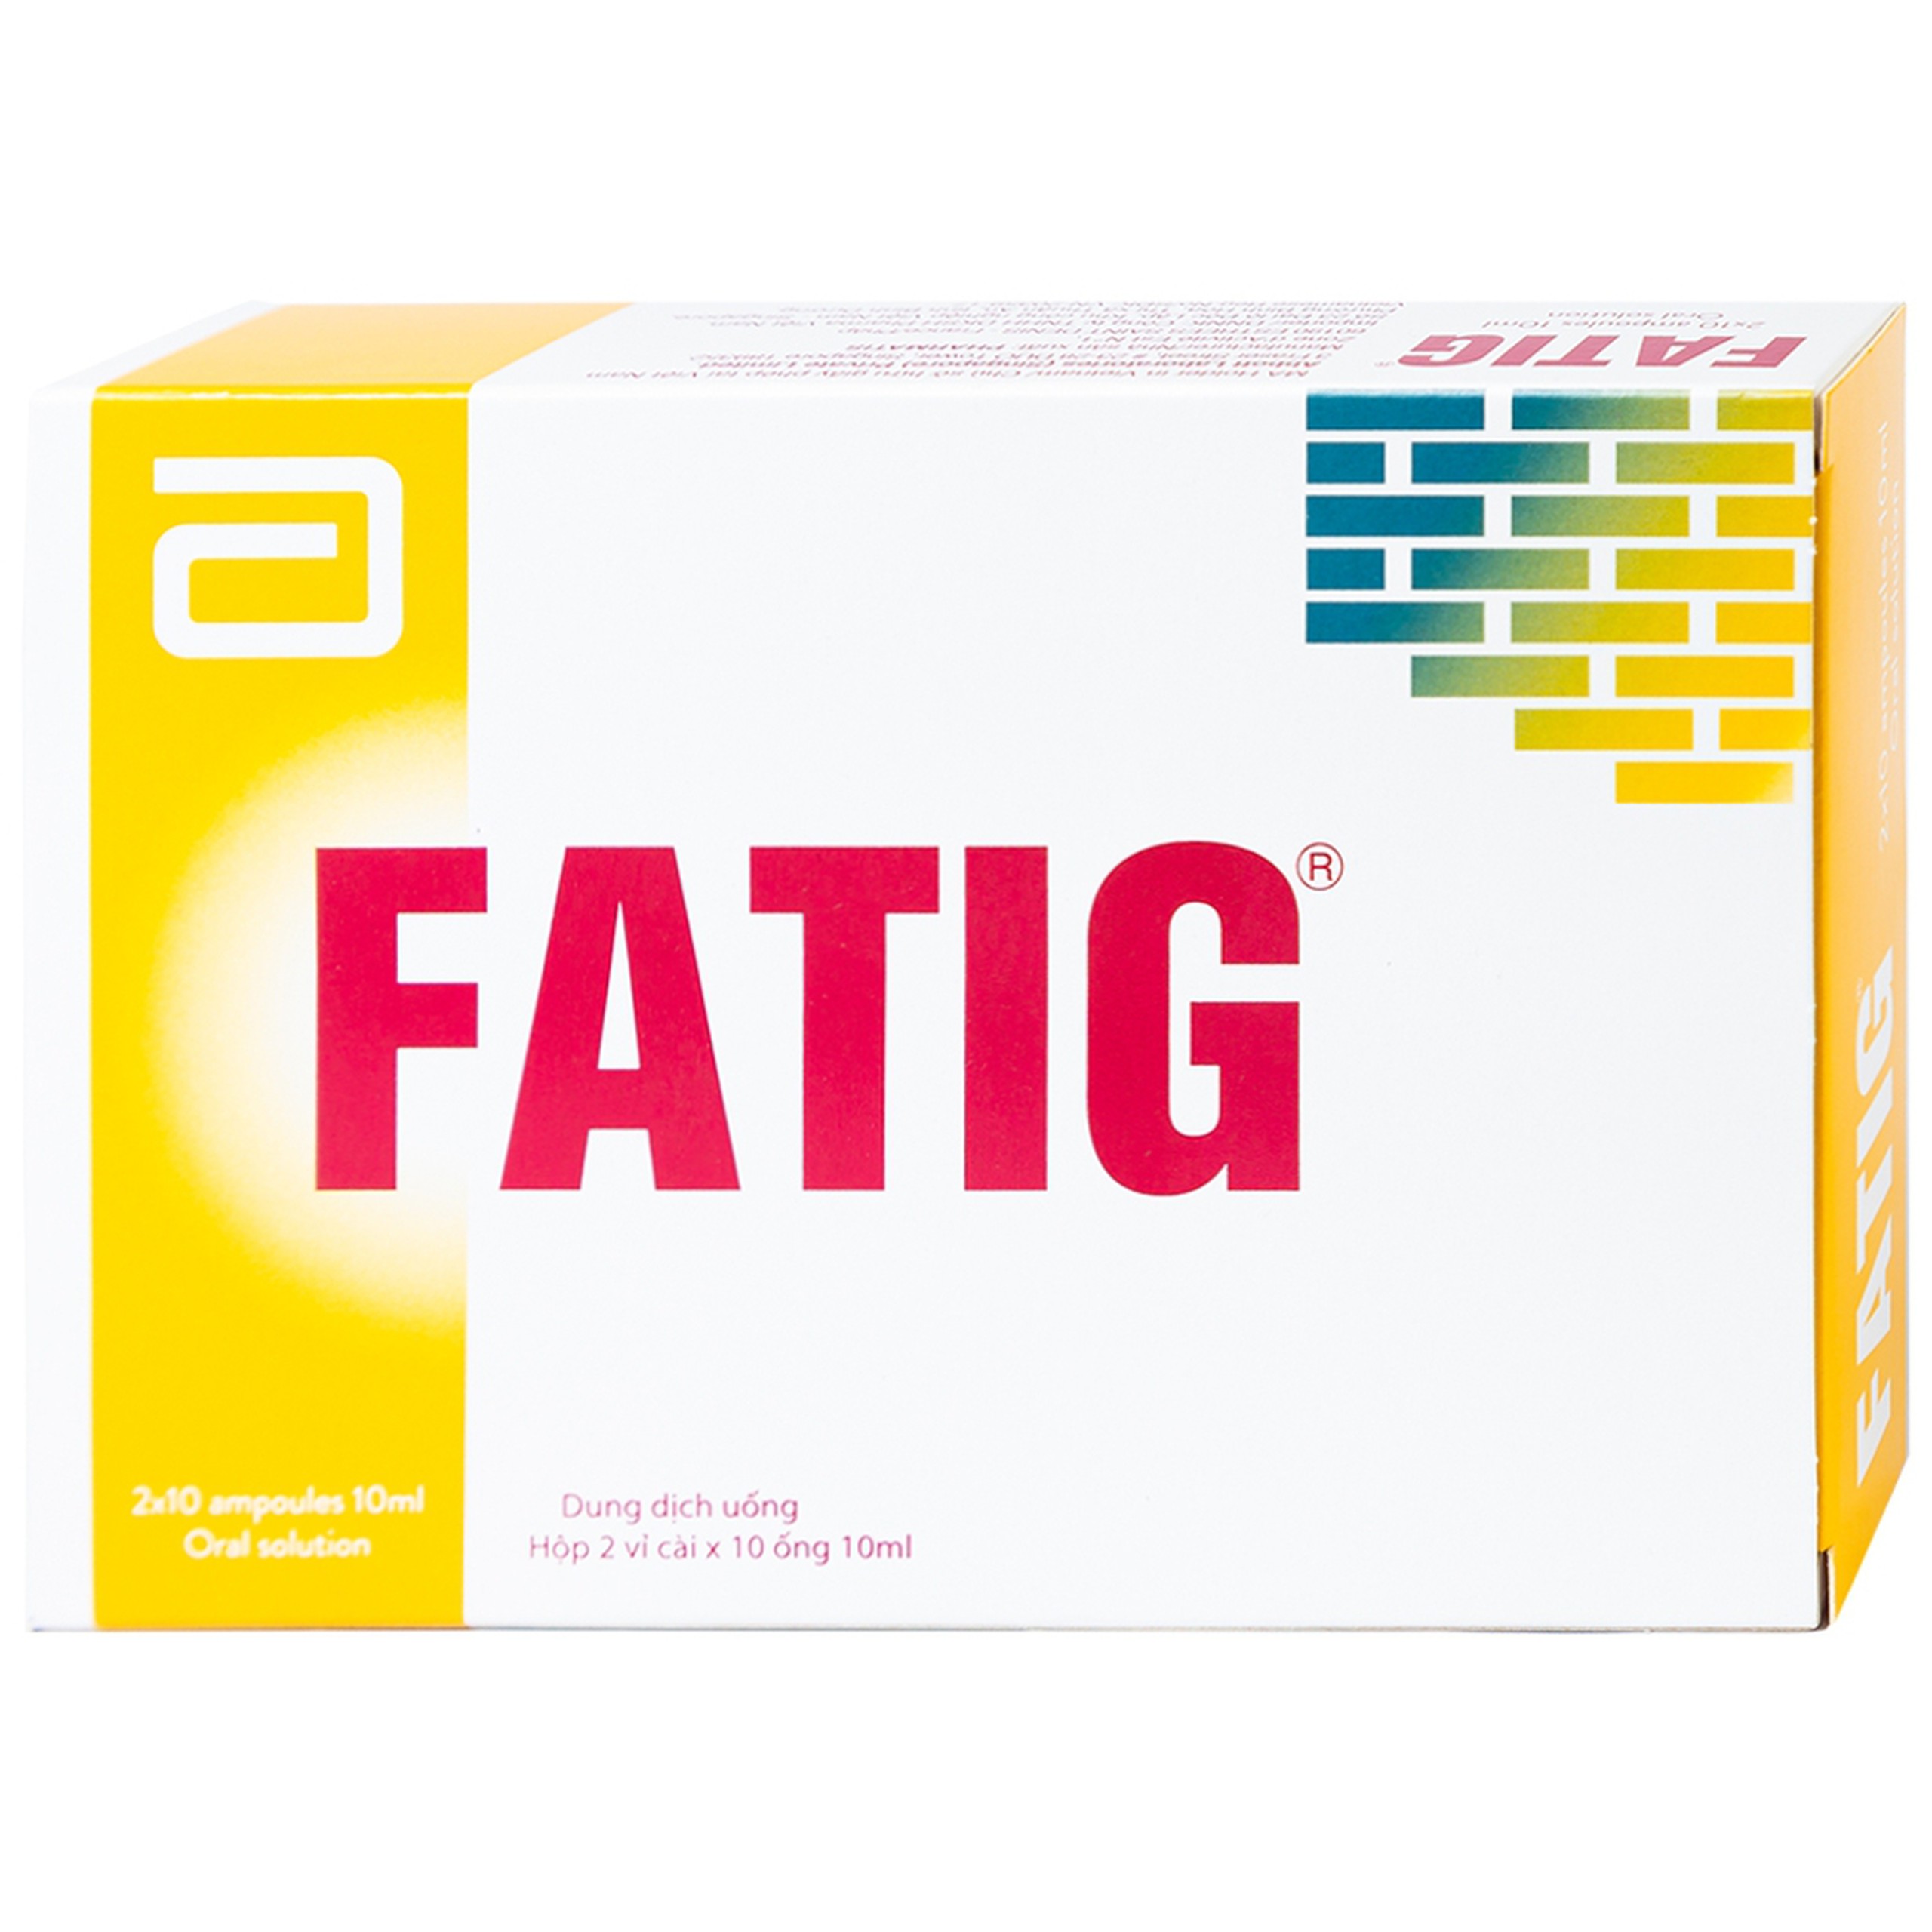 Dung dịch uống Fatig Abbott hỗ trợ điều trị suy nhược chức năng, bổ sung khoáng chất (2 vỉ x 10 ống)